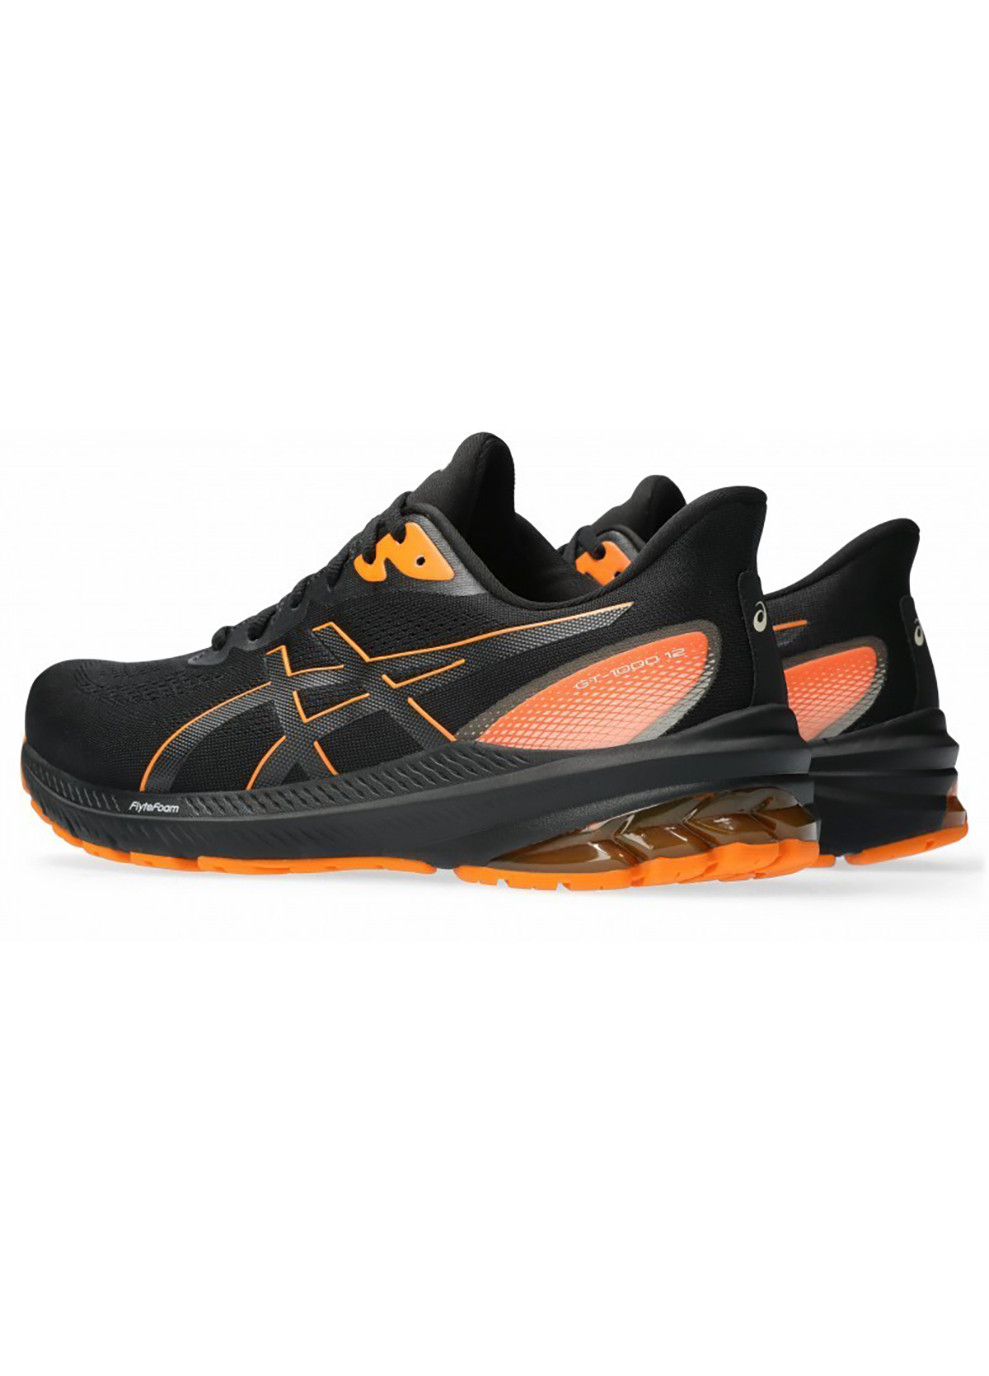 Цветные демисезонные мужские кроссовки gt-1000 12 gtx черный, оранжевый Asics